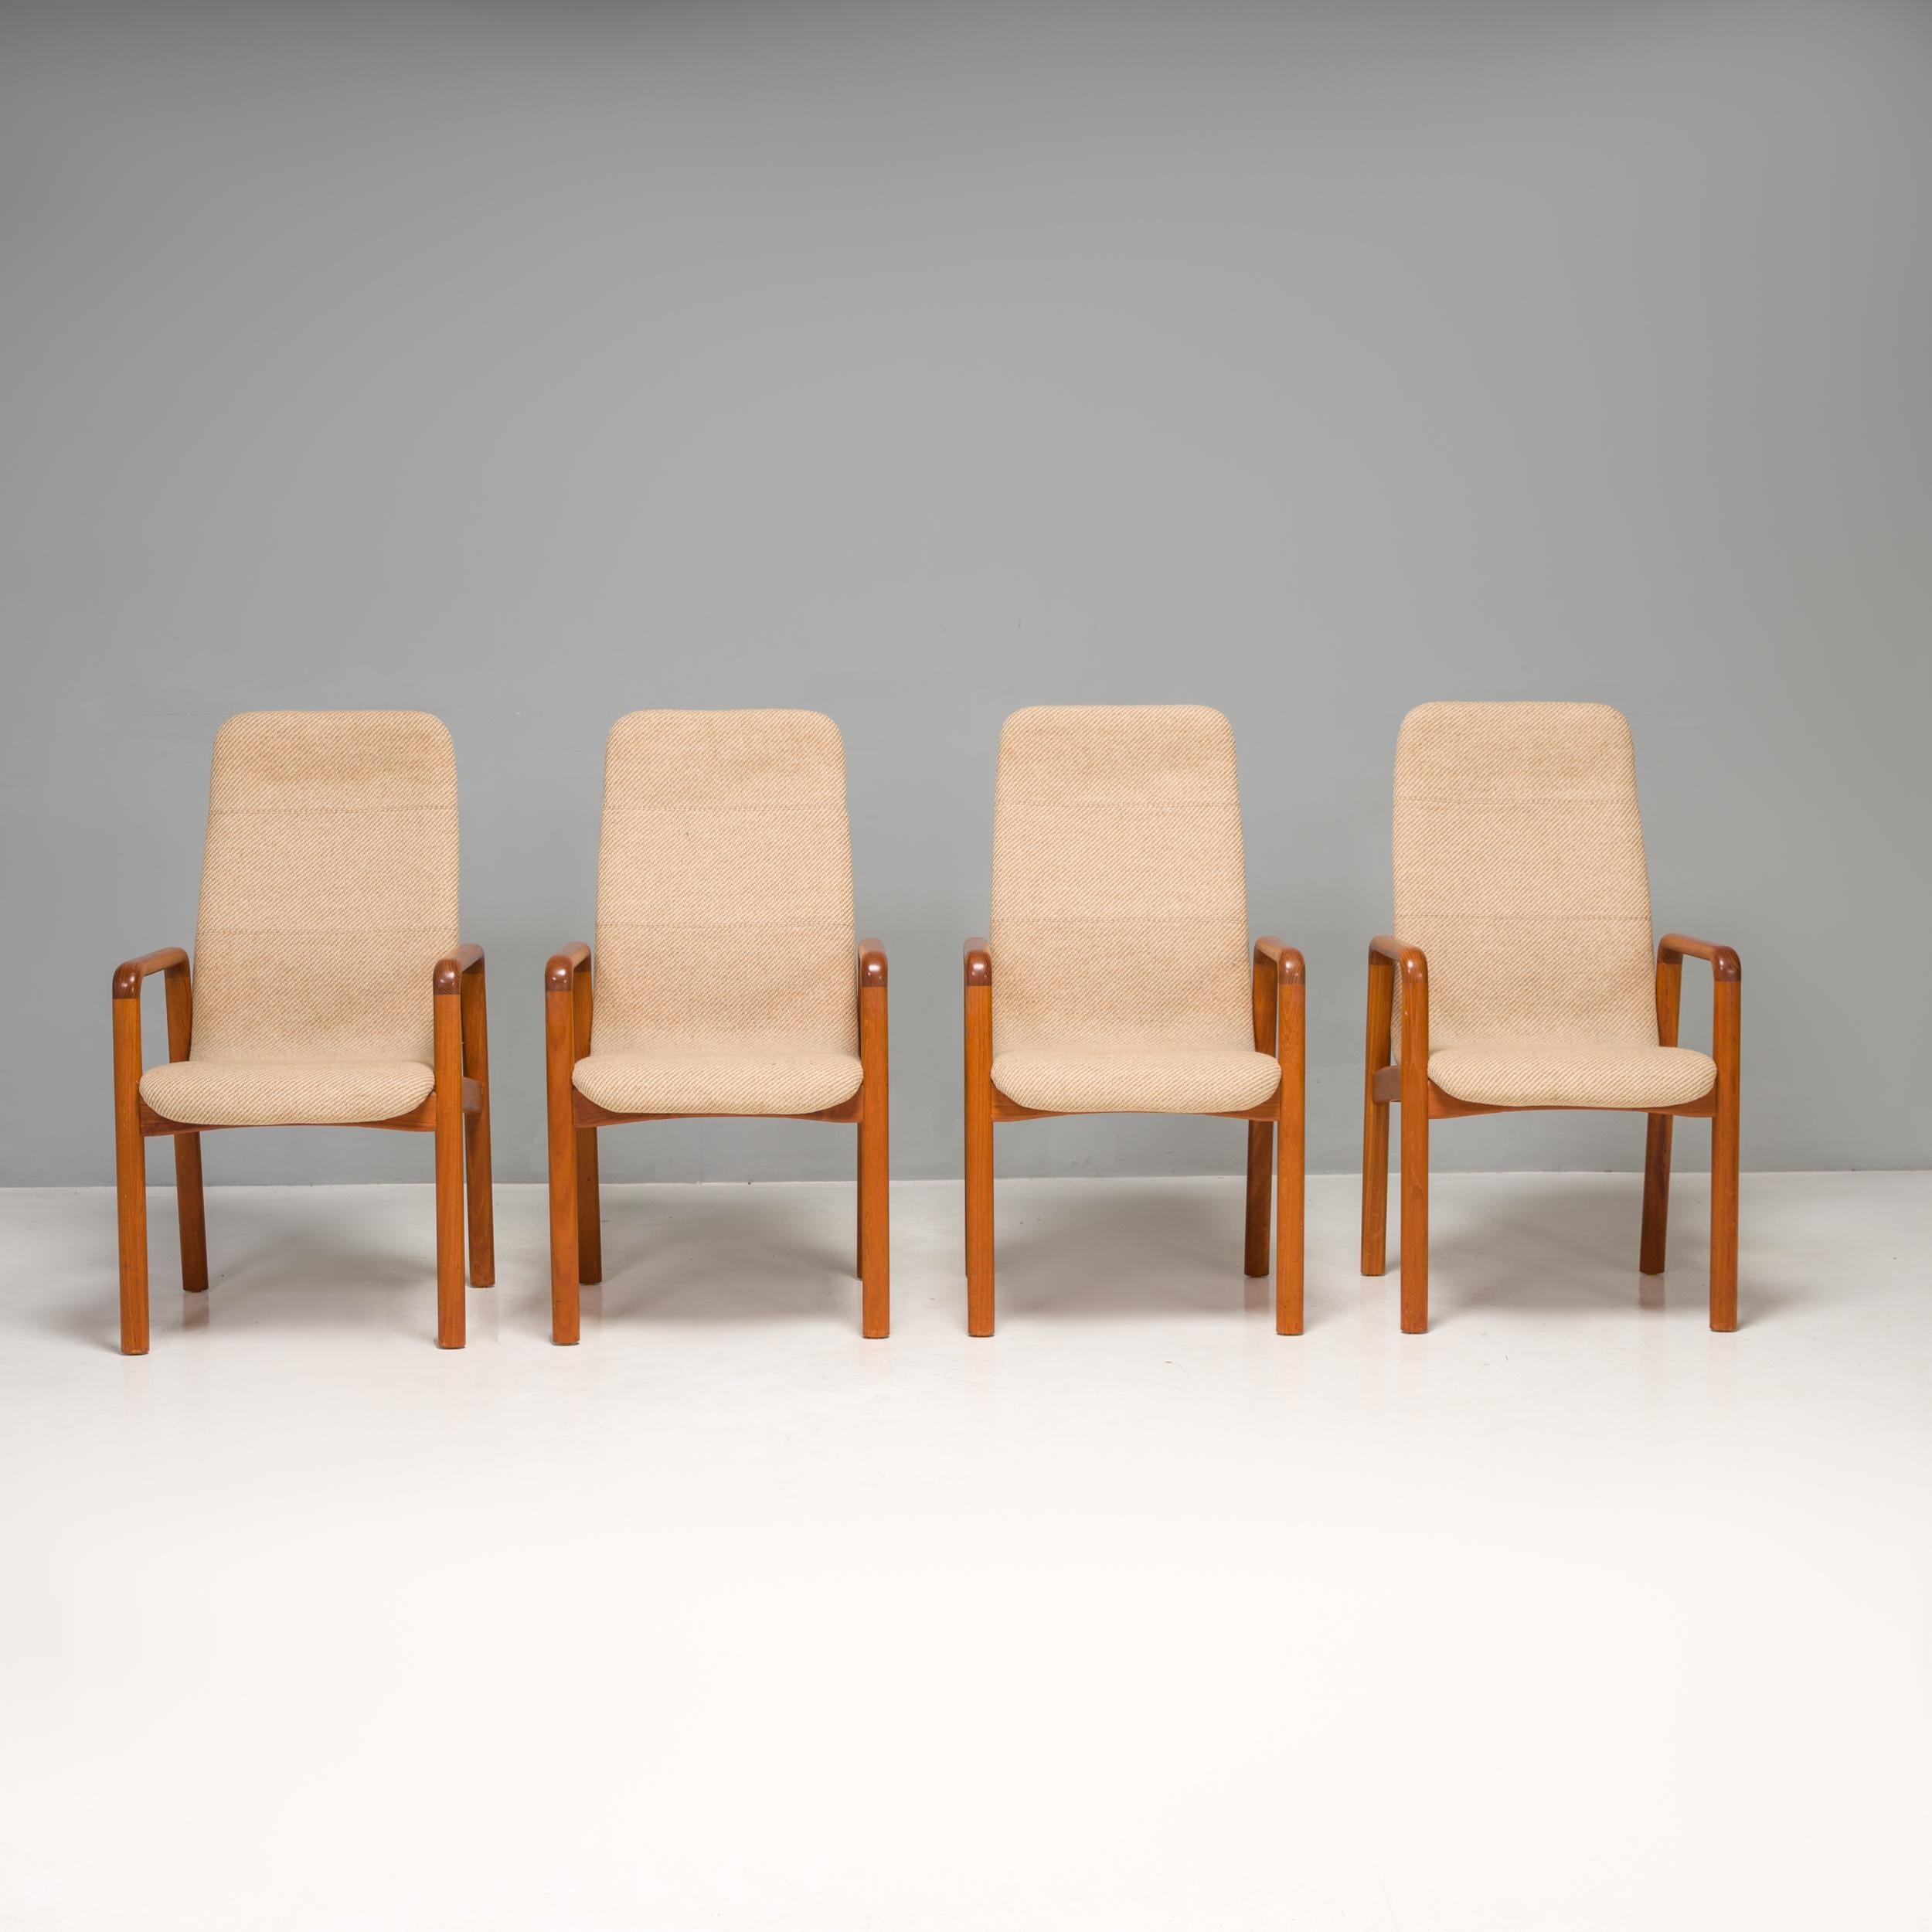 Ein fantastisches Beispiel für dänisches Design aus der Mitte des Jahrhunderts ist dieses Stuhlset, das von Dyrlund hergestellt wurde.

Die aus Teakholz gefertigten Stühle mit sanft geschwungenen Armlehnen und zylindrischen Beinen haben eine